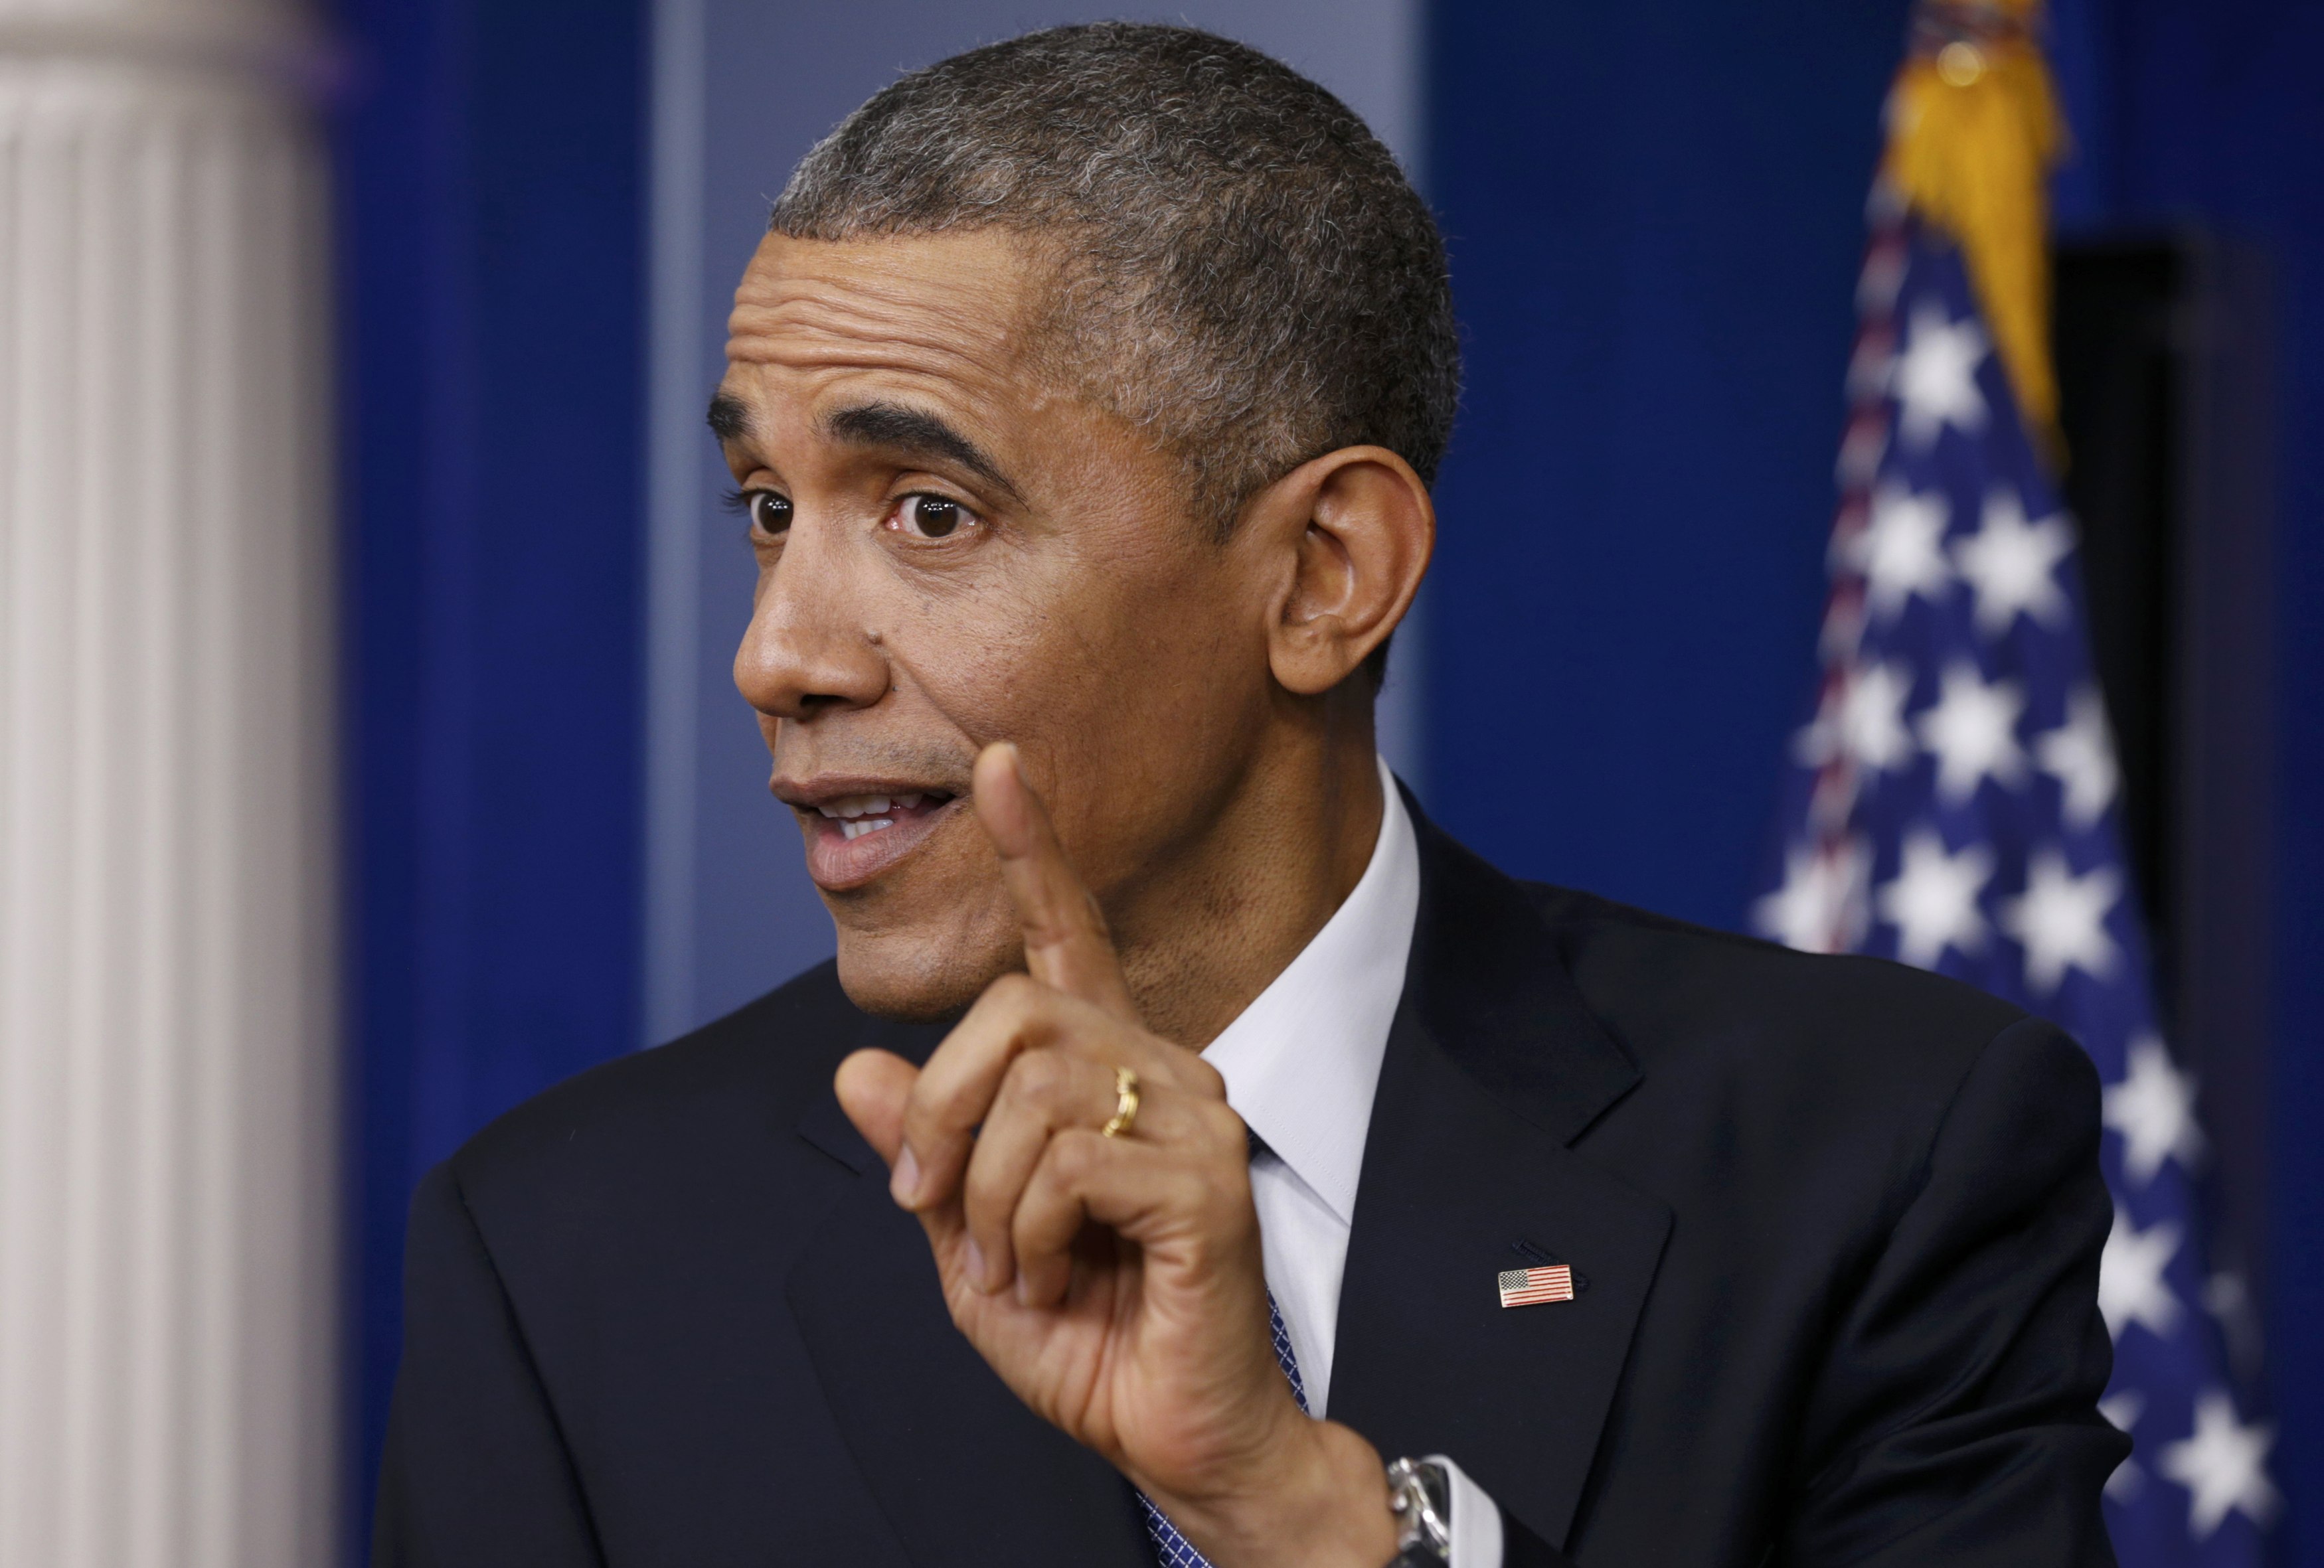 Obama enfatizará defensa de derechos humanos y democracia en la Cumbre de las Américas